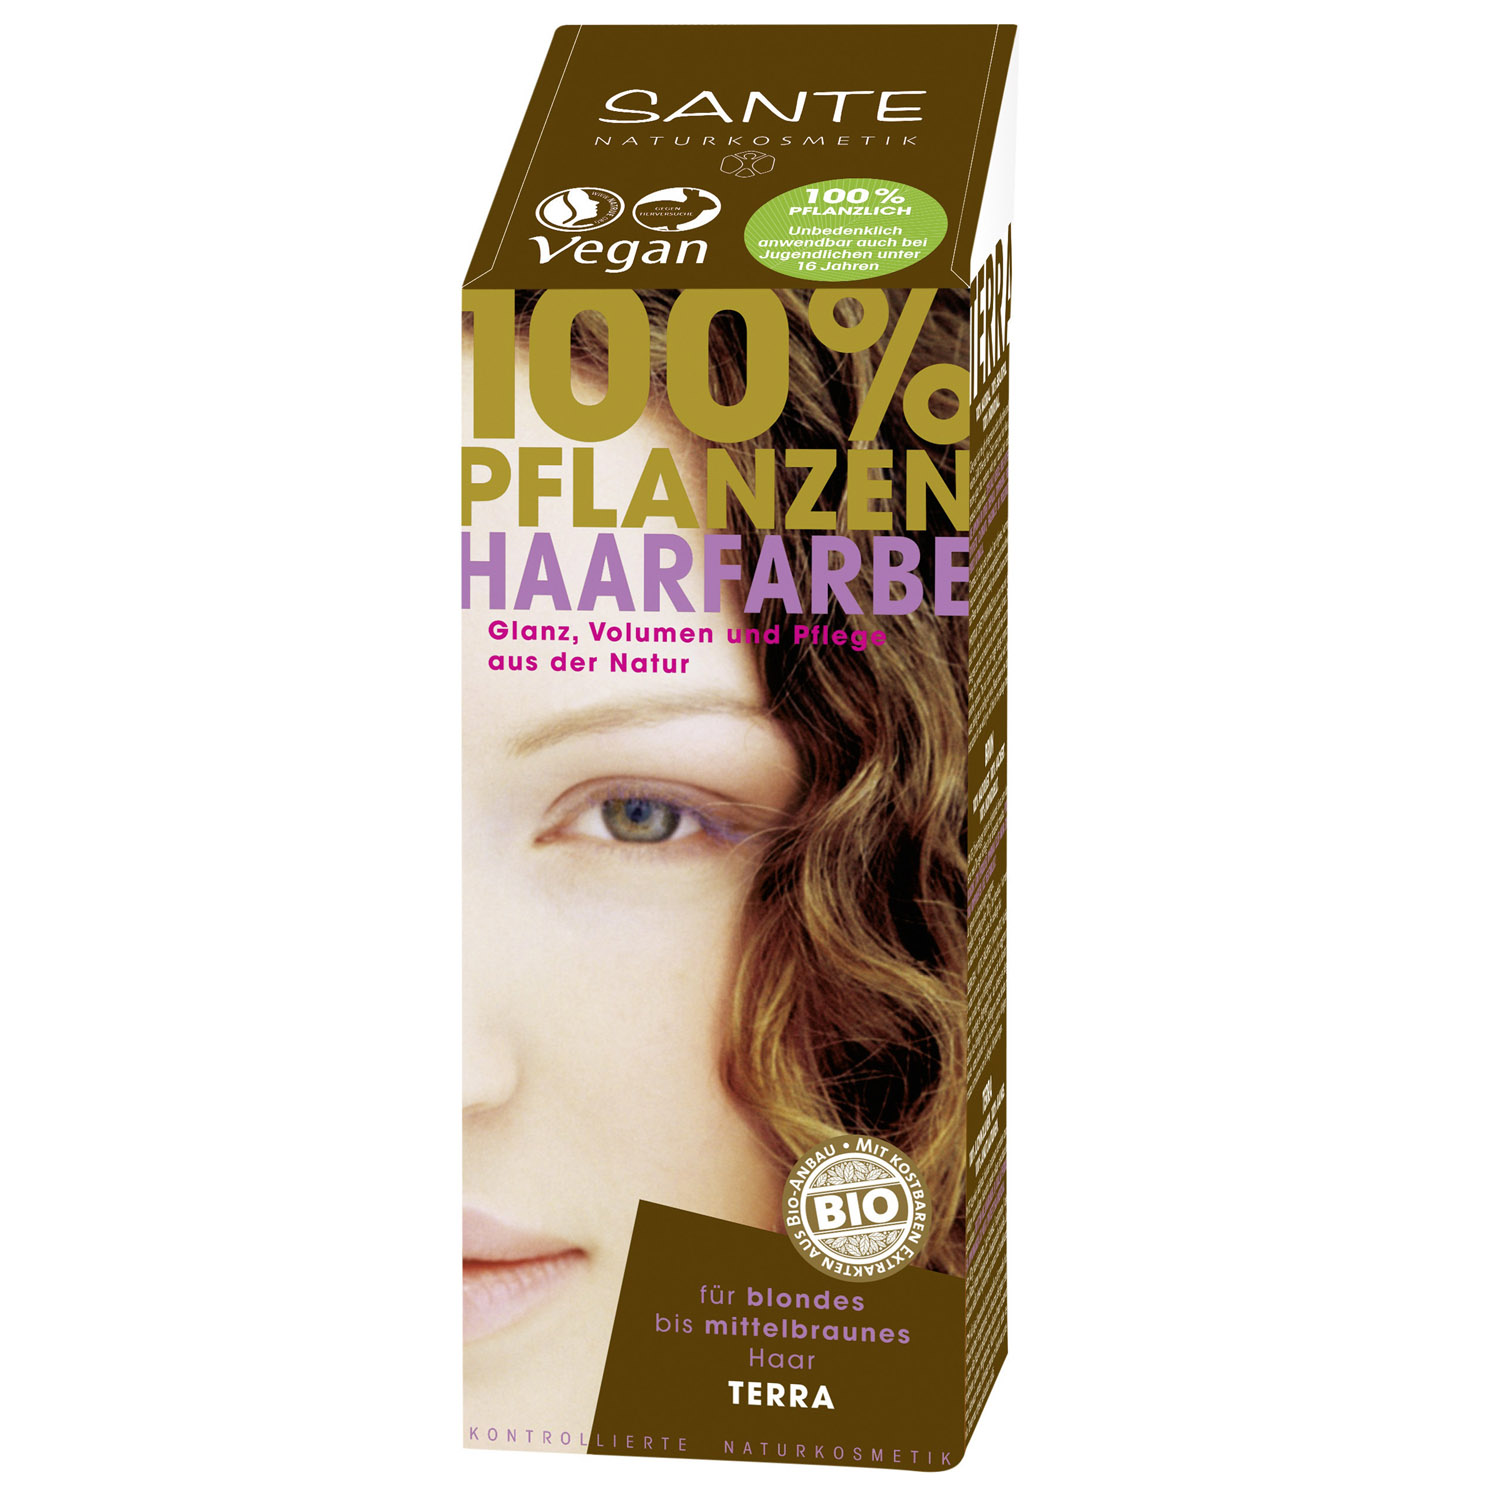 Біо-фарба для волосся Sante Terra, порошкова, рослинна, 100 г - фото 1